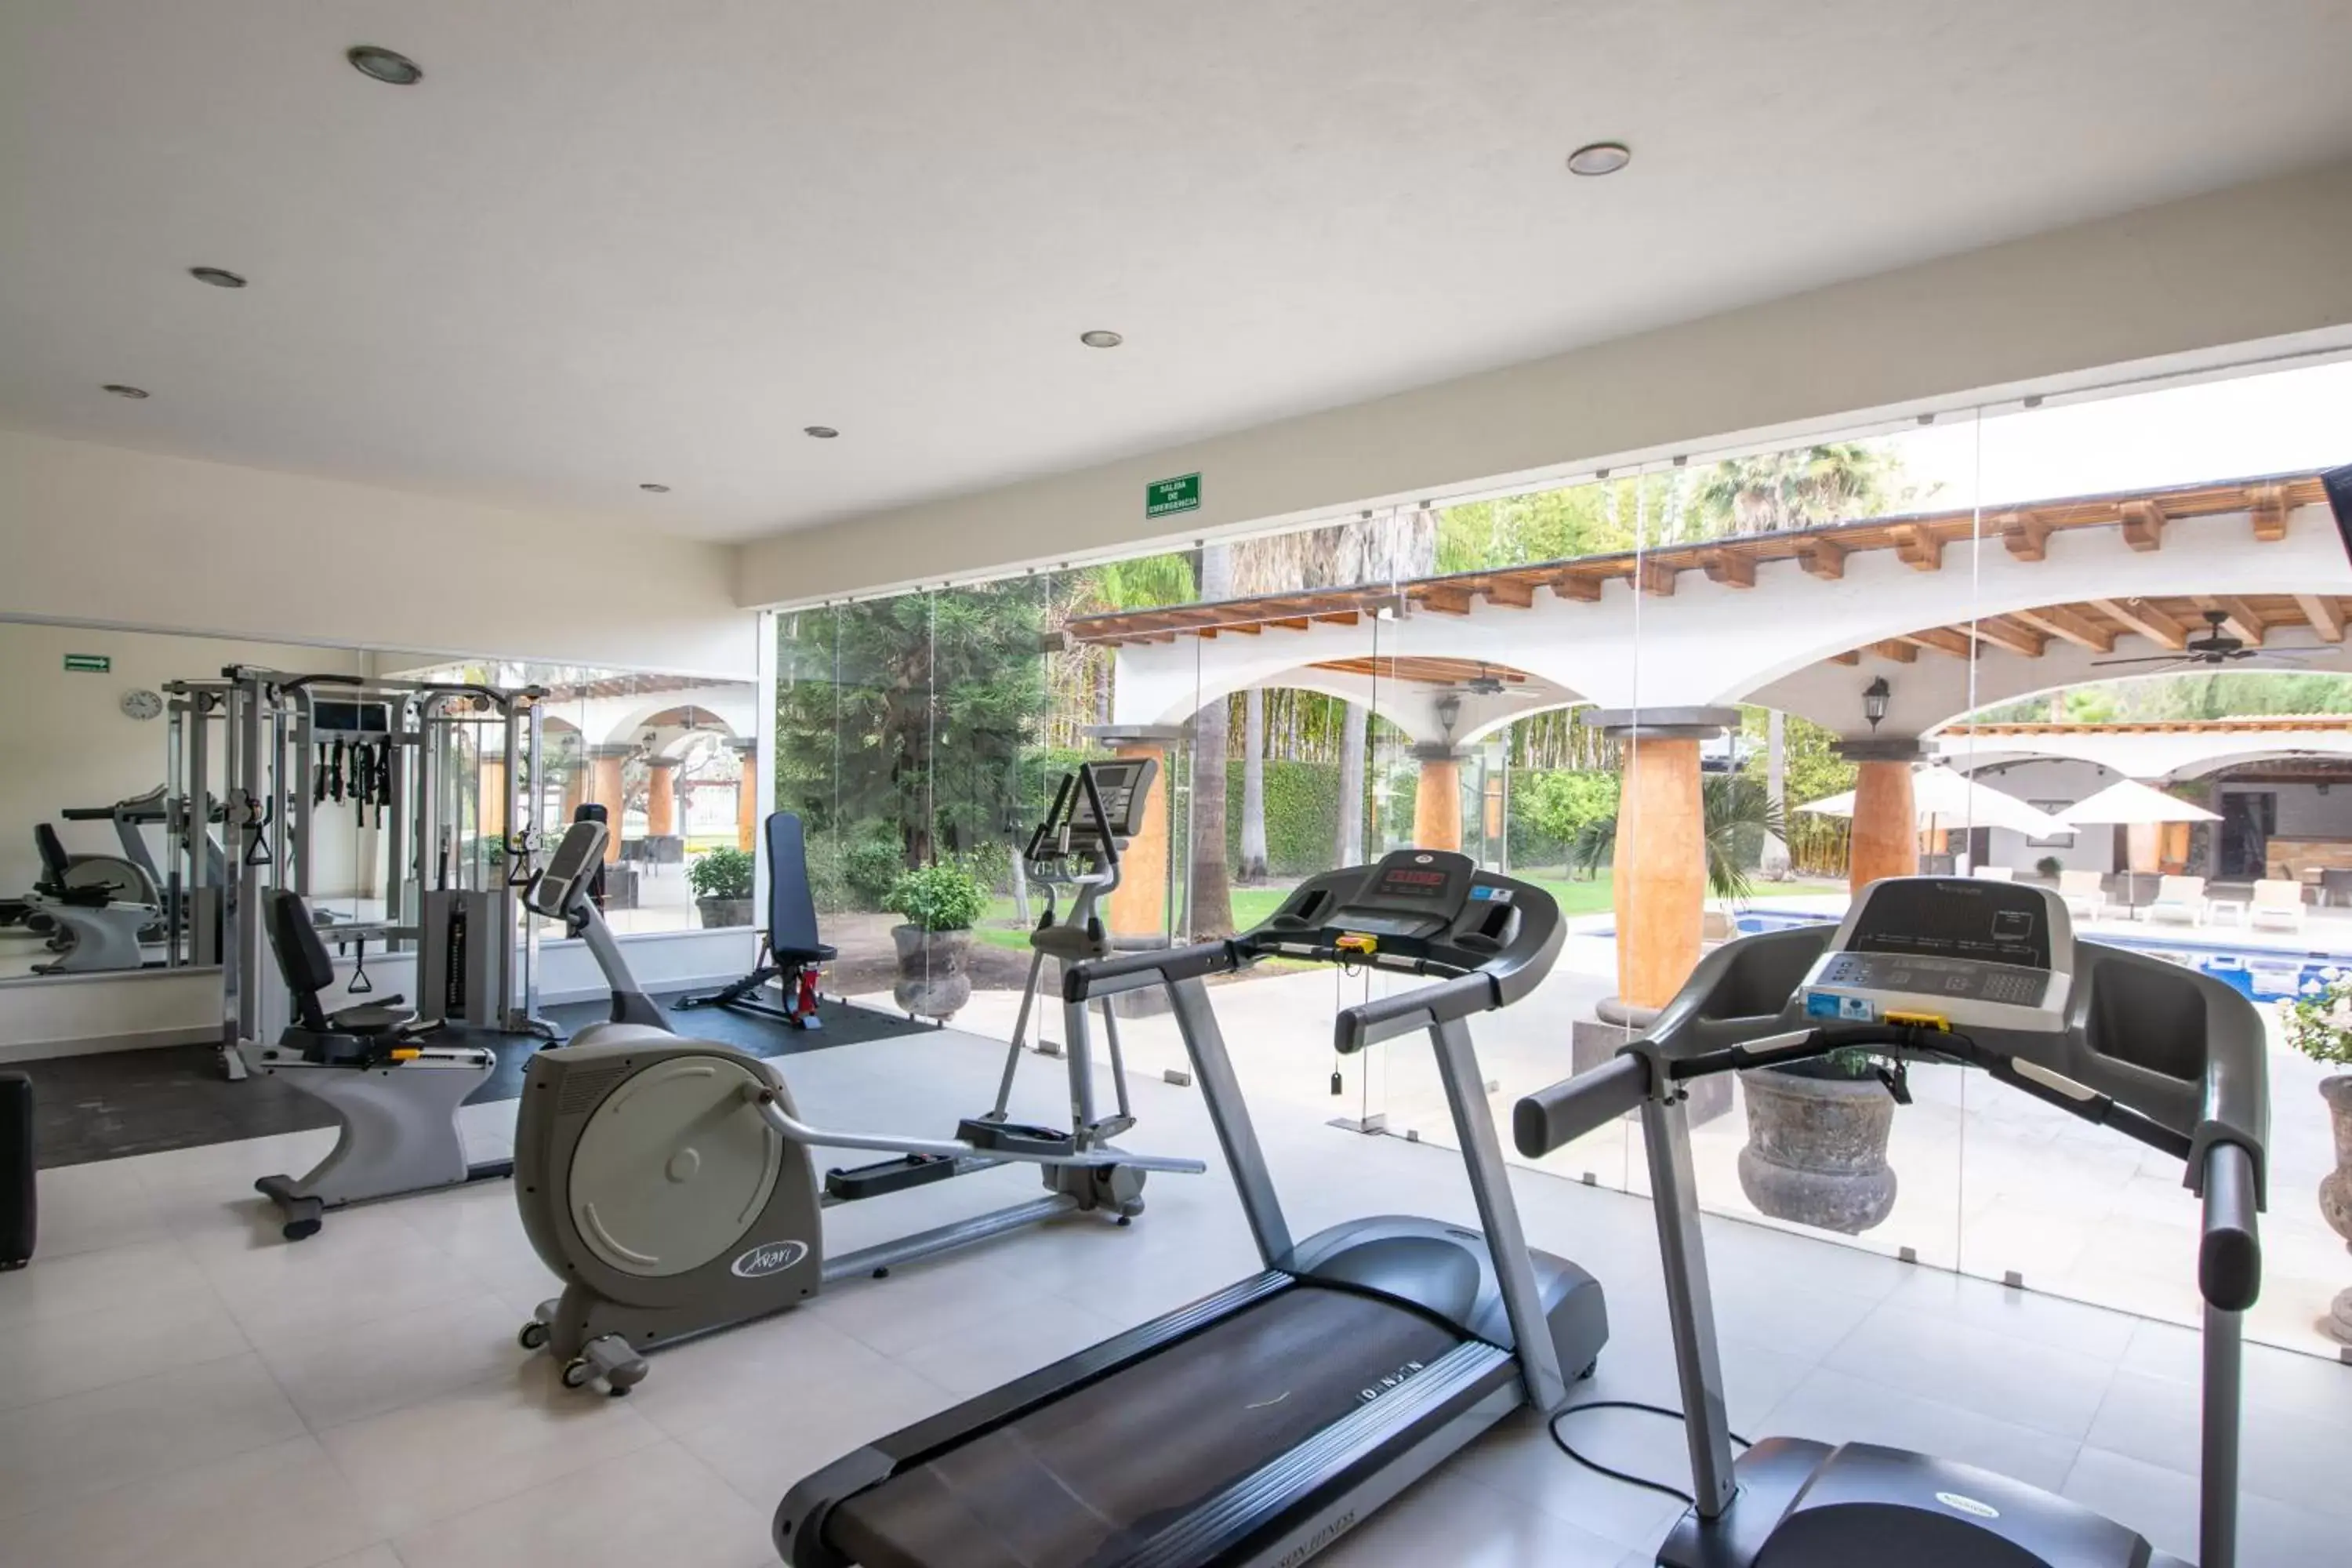 Fitness centre/facilities, Fitness Center/Facilities in Hotel Hacienda la Venta